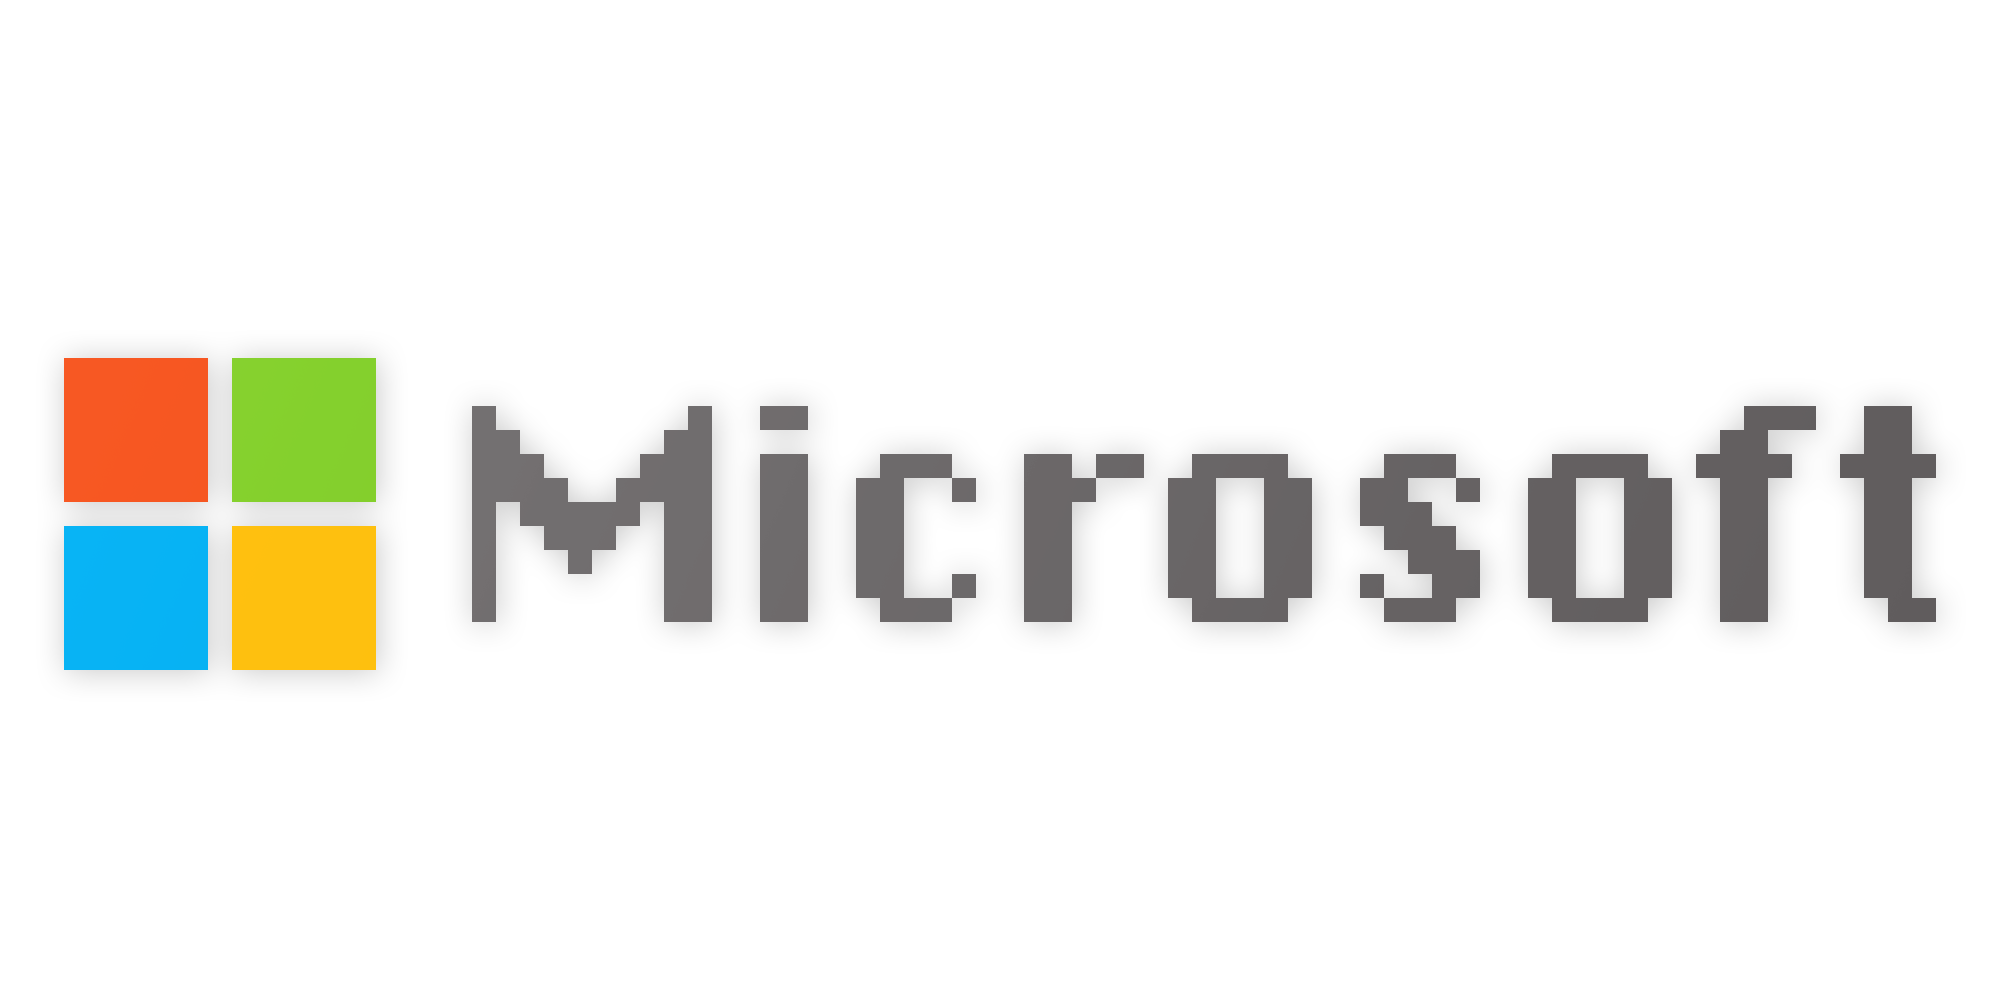 Microsoft Business Logo - Tech Logos in Chicago Font — Steve Lovelace